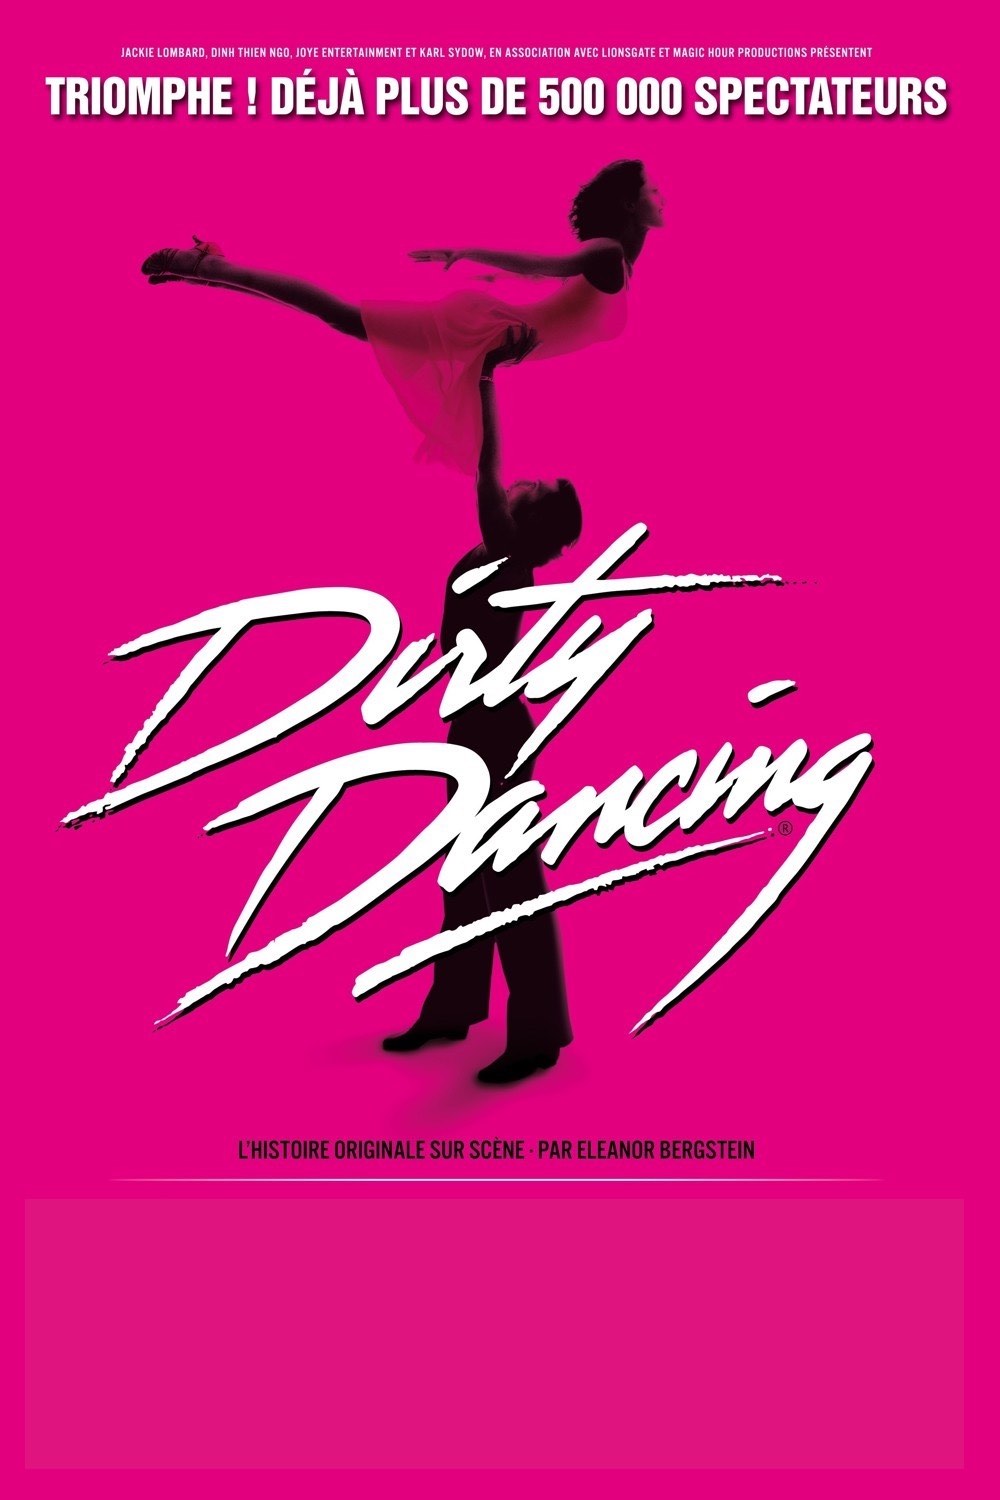 dirty-dancing